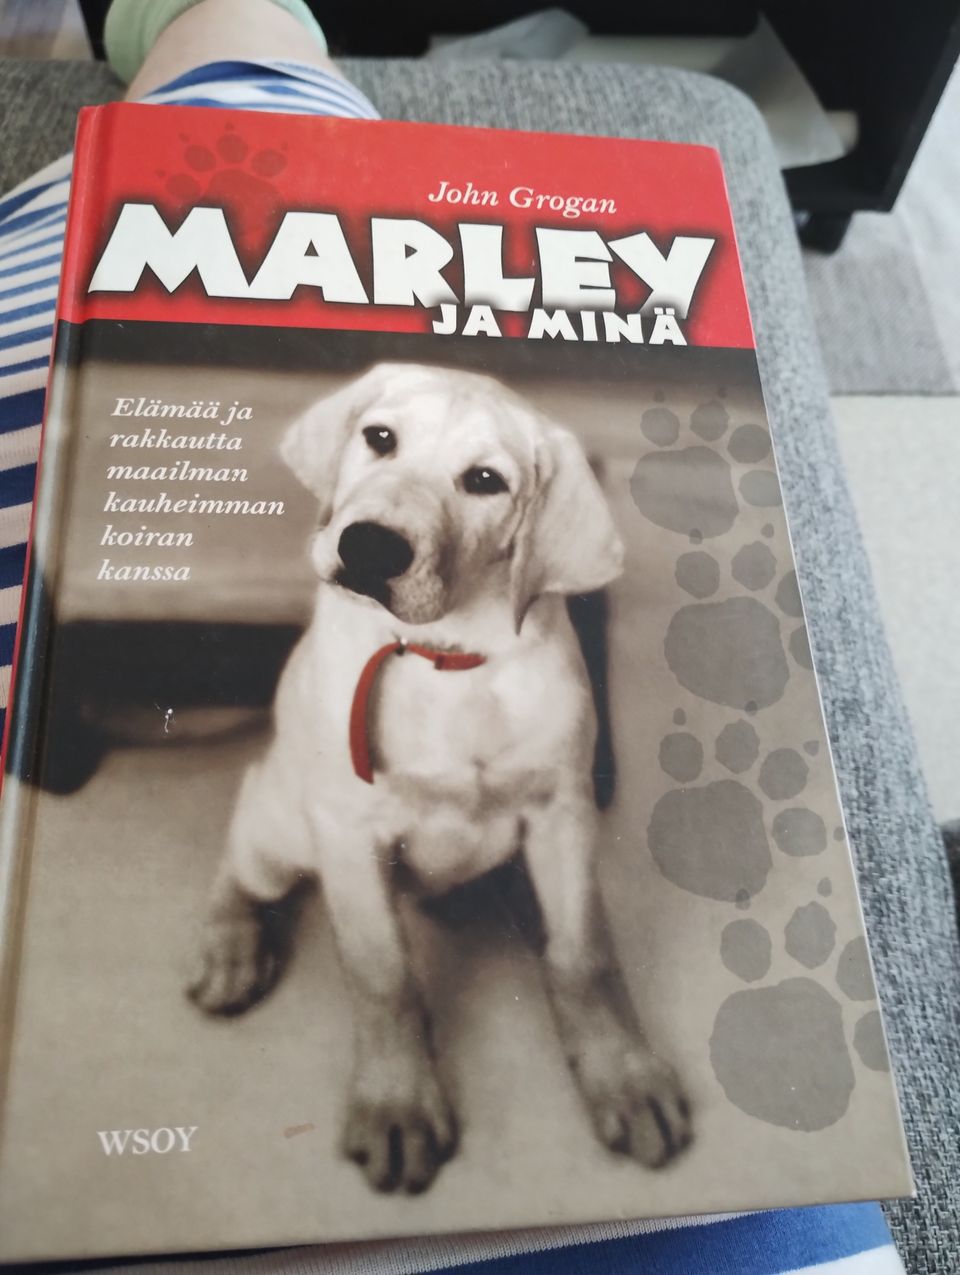 Marley ja minä kirja